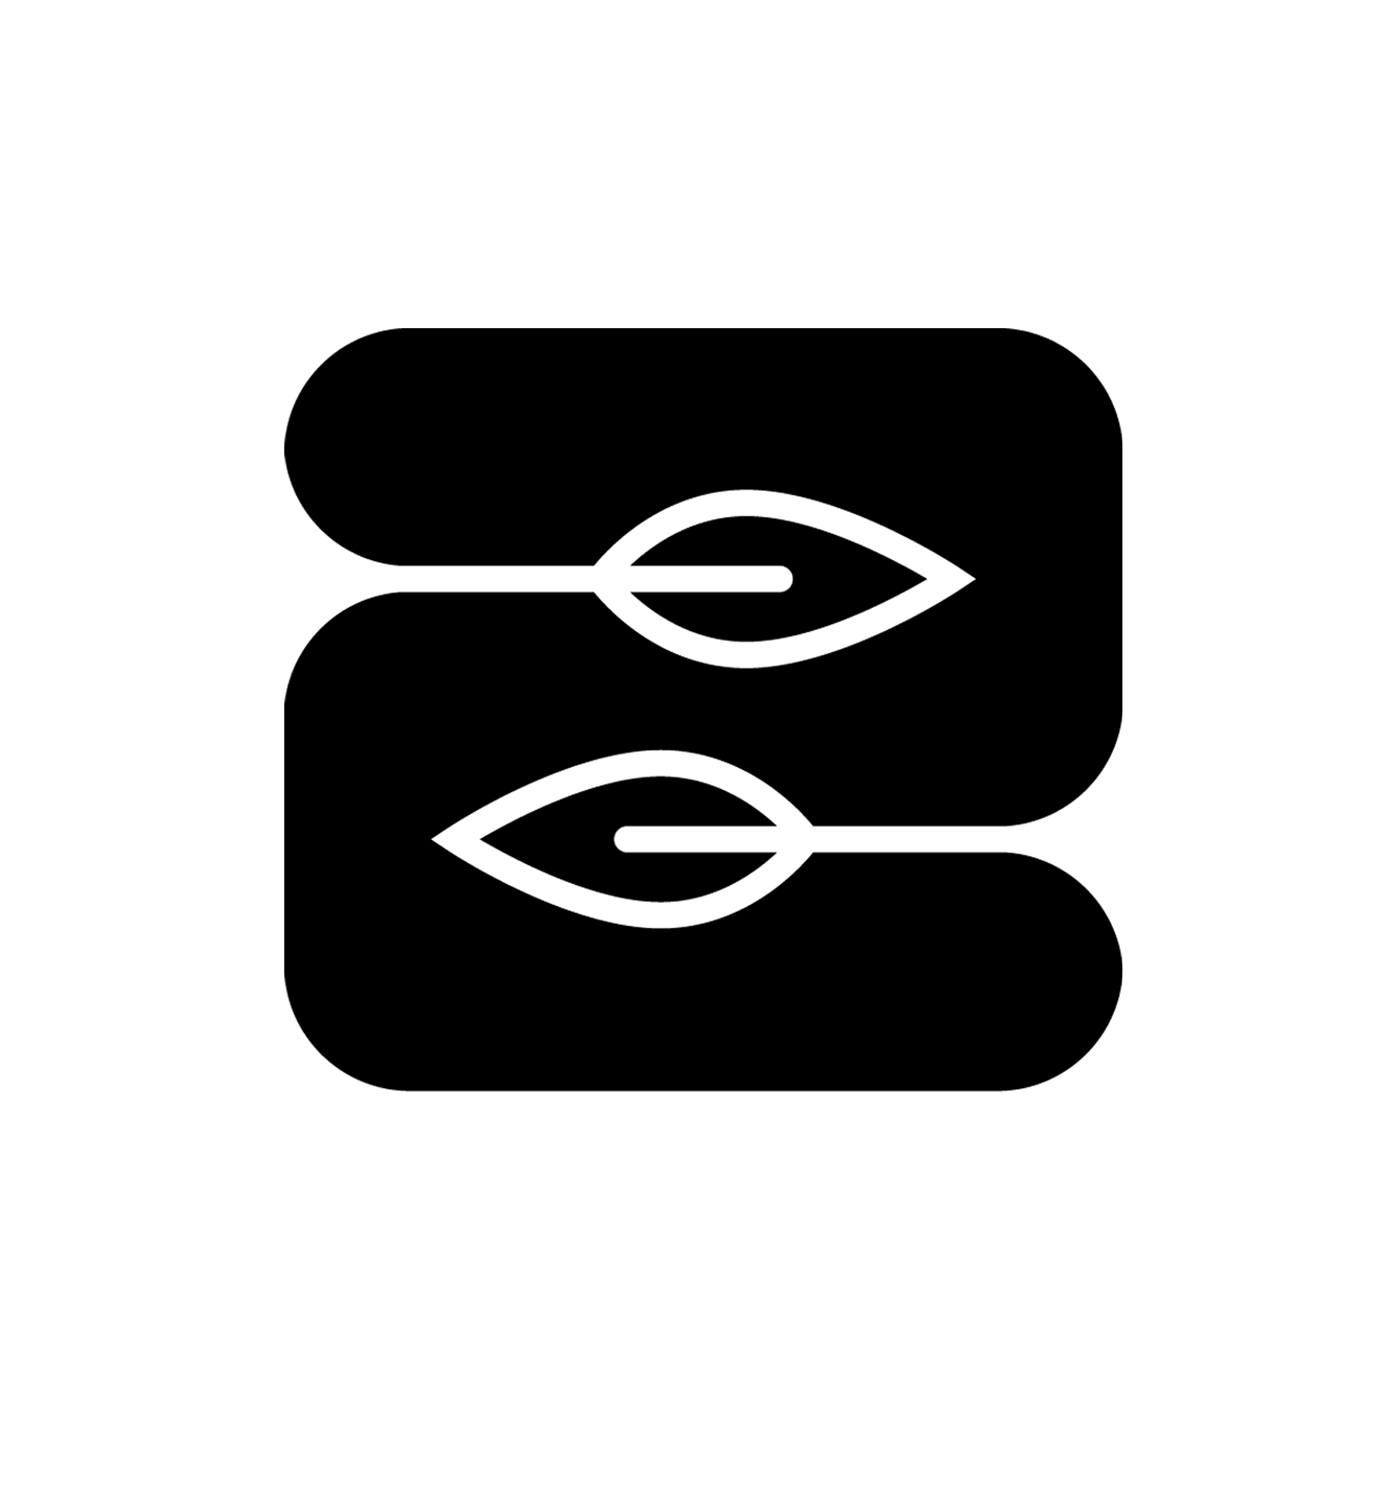 2Leaf - logo